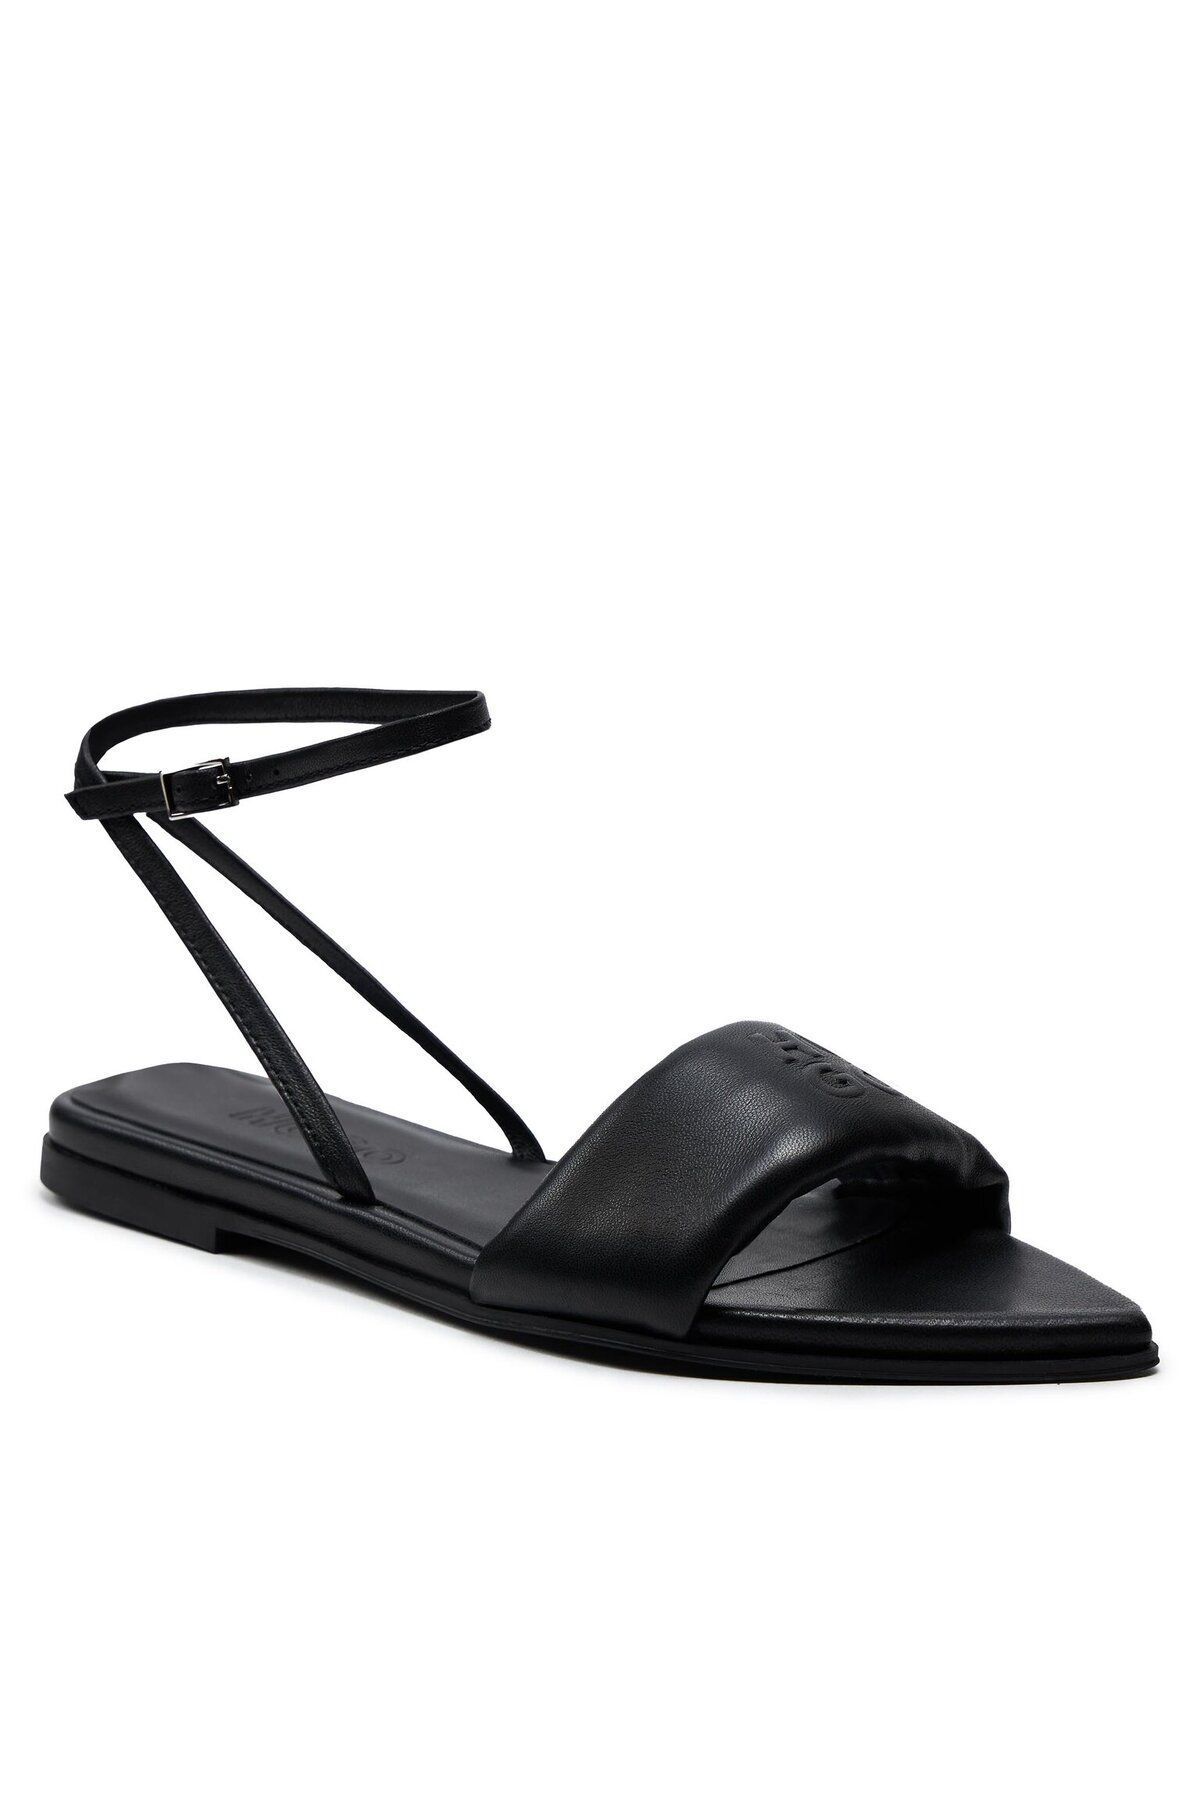 HUGO Kadın Logolu Düz Tabanlı Rahat Günlük Kullanım Siyah Sandalet 50517494-001